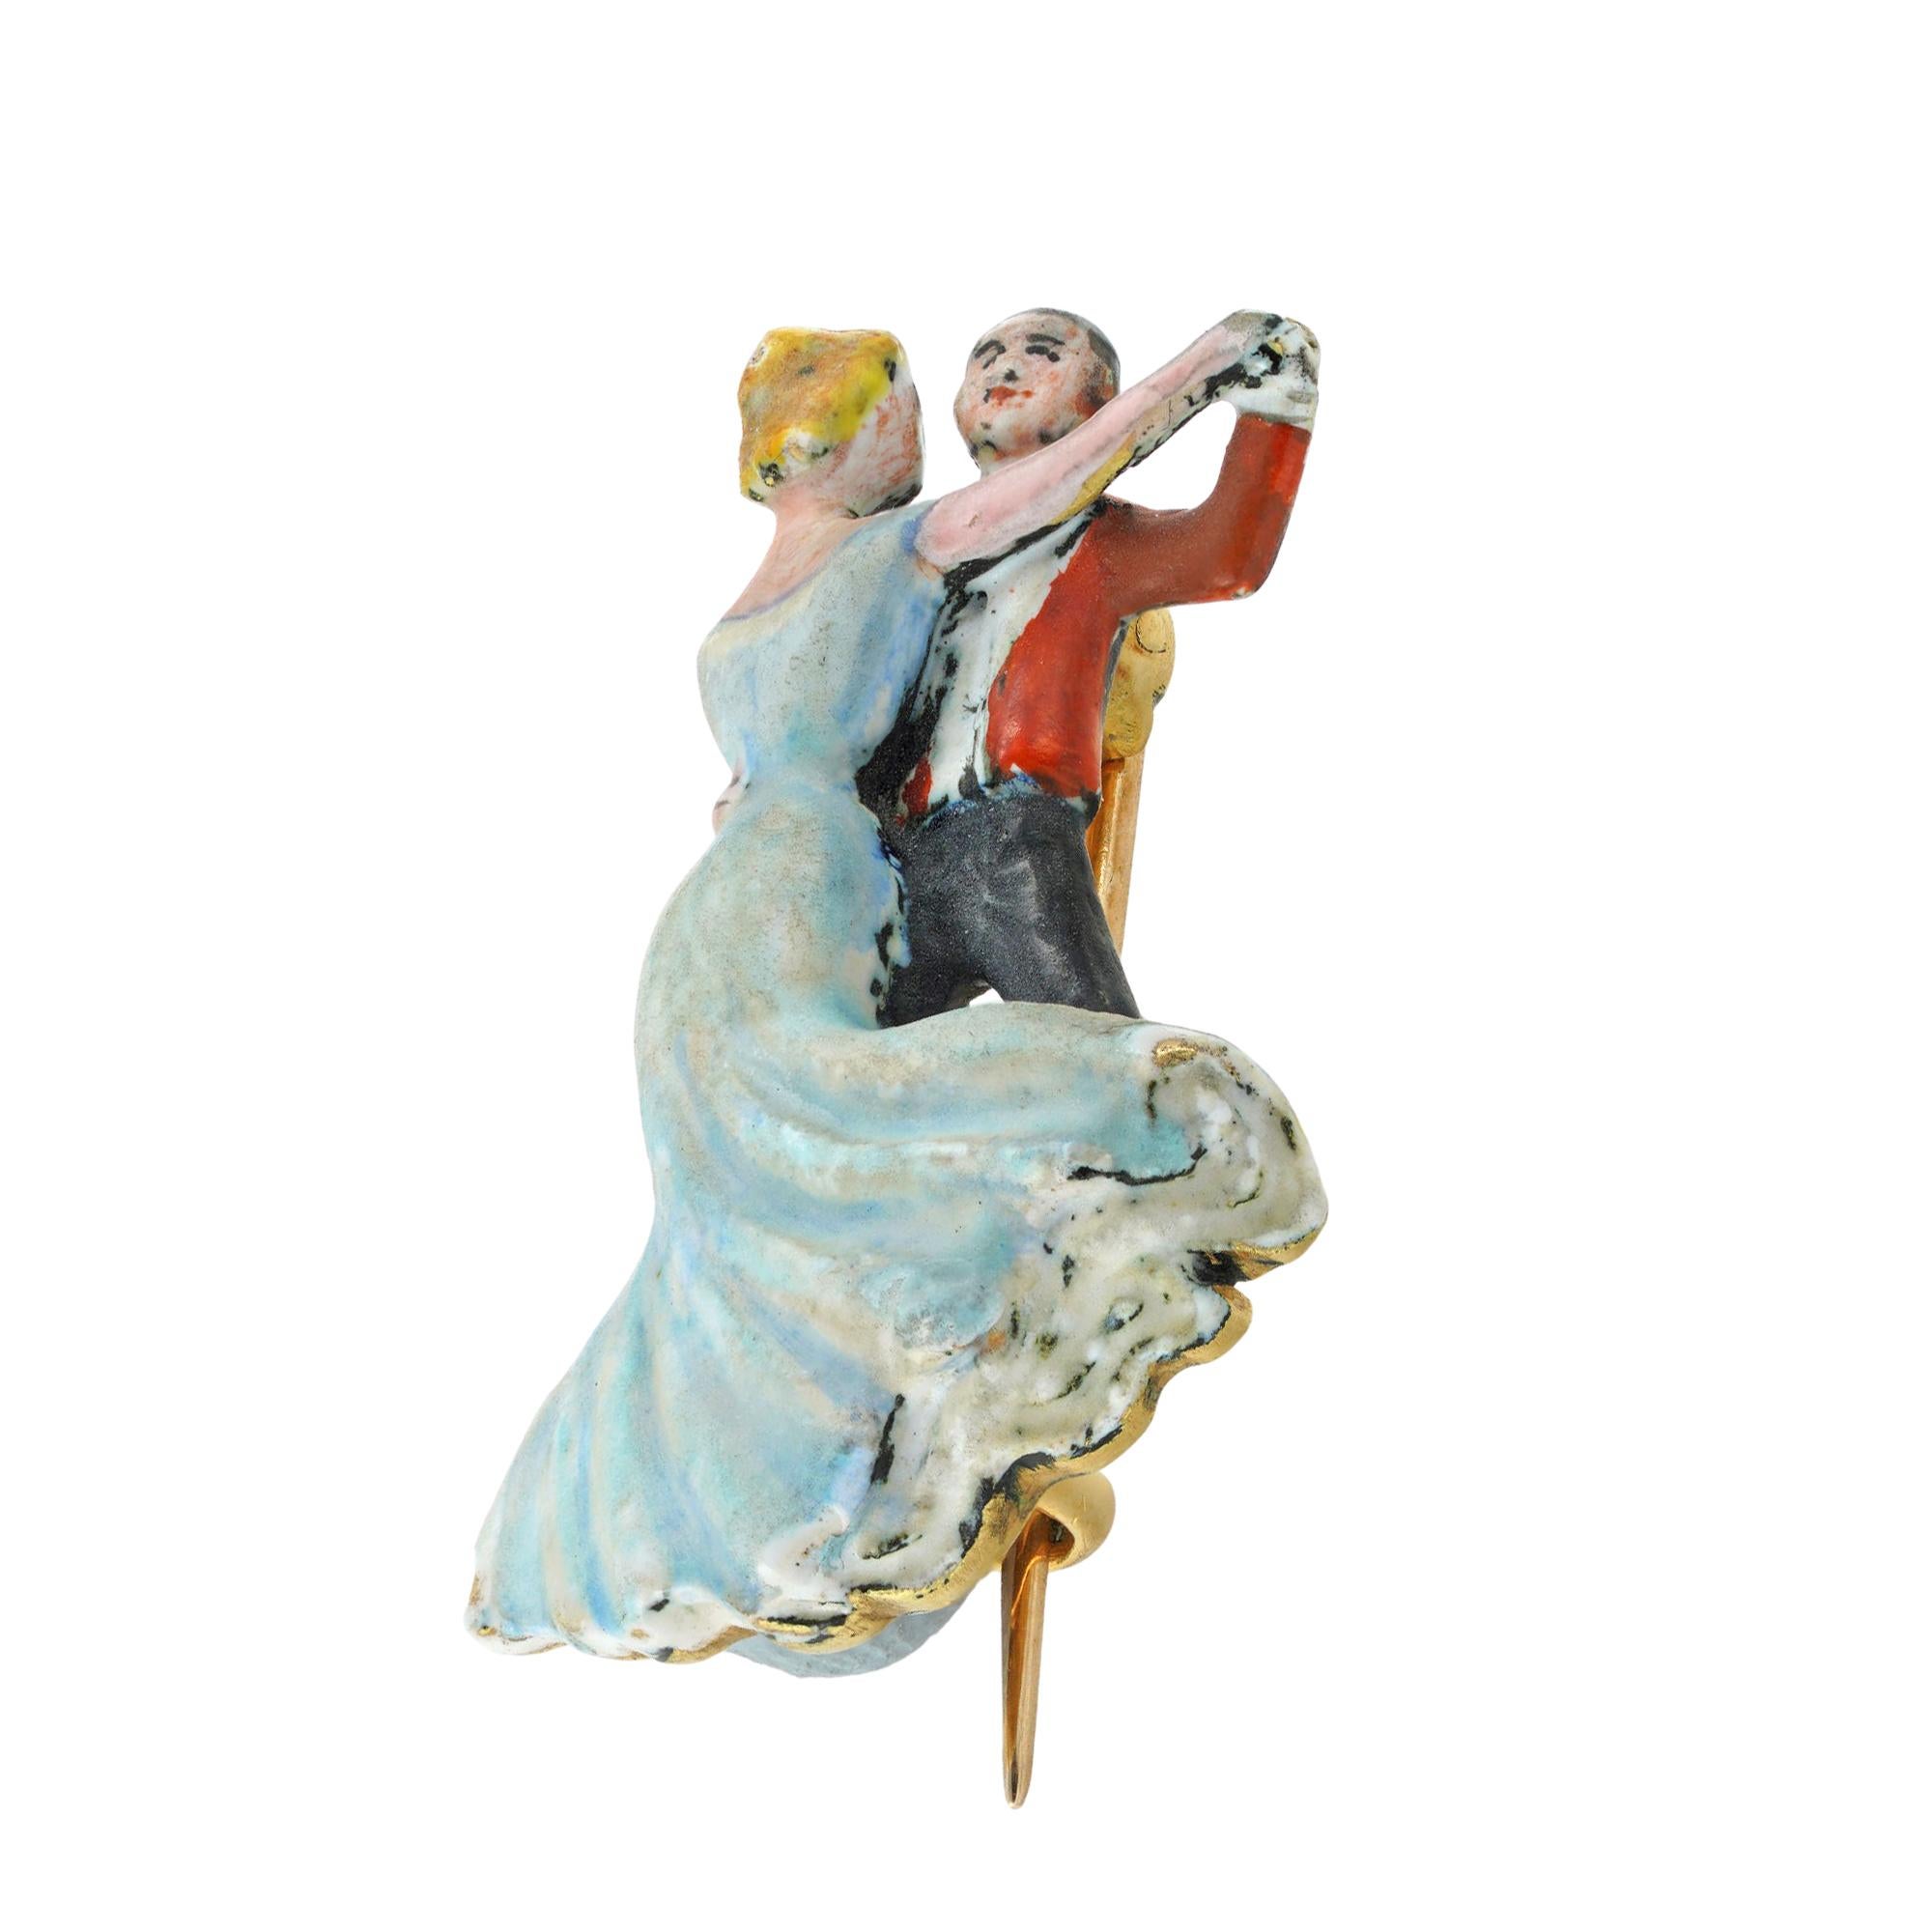 Une broche édouardienne en émail représentant deux danseurs, délicatement émaillée à la main sur une monture et une broche en or jaune, gravée 'Pytchley Ball 1903', mesurant approximativement 2,5x1,6cm, poids brut 8,7 grammes, vers 1903.

Si vous